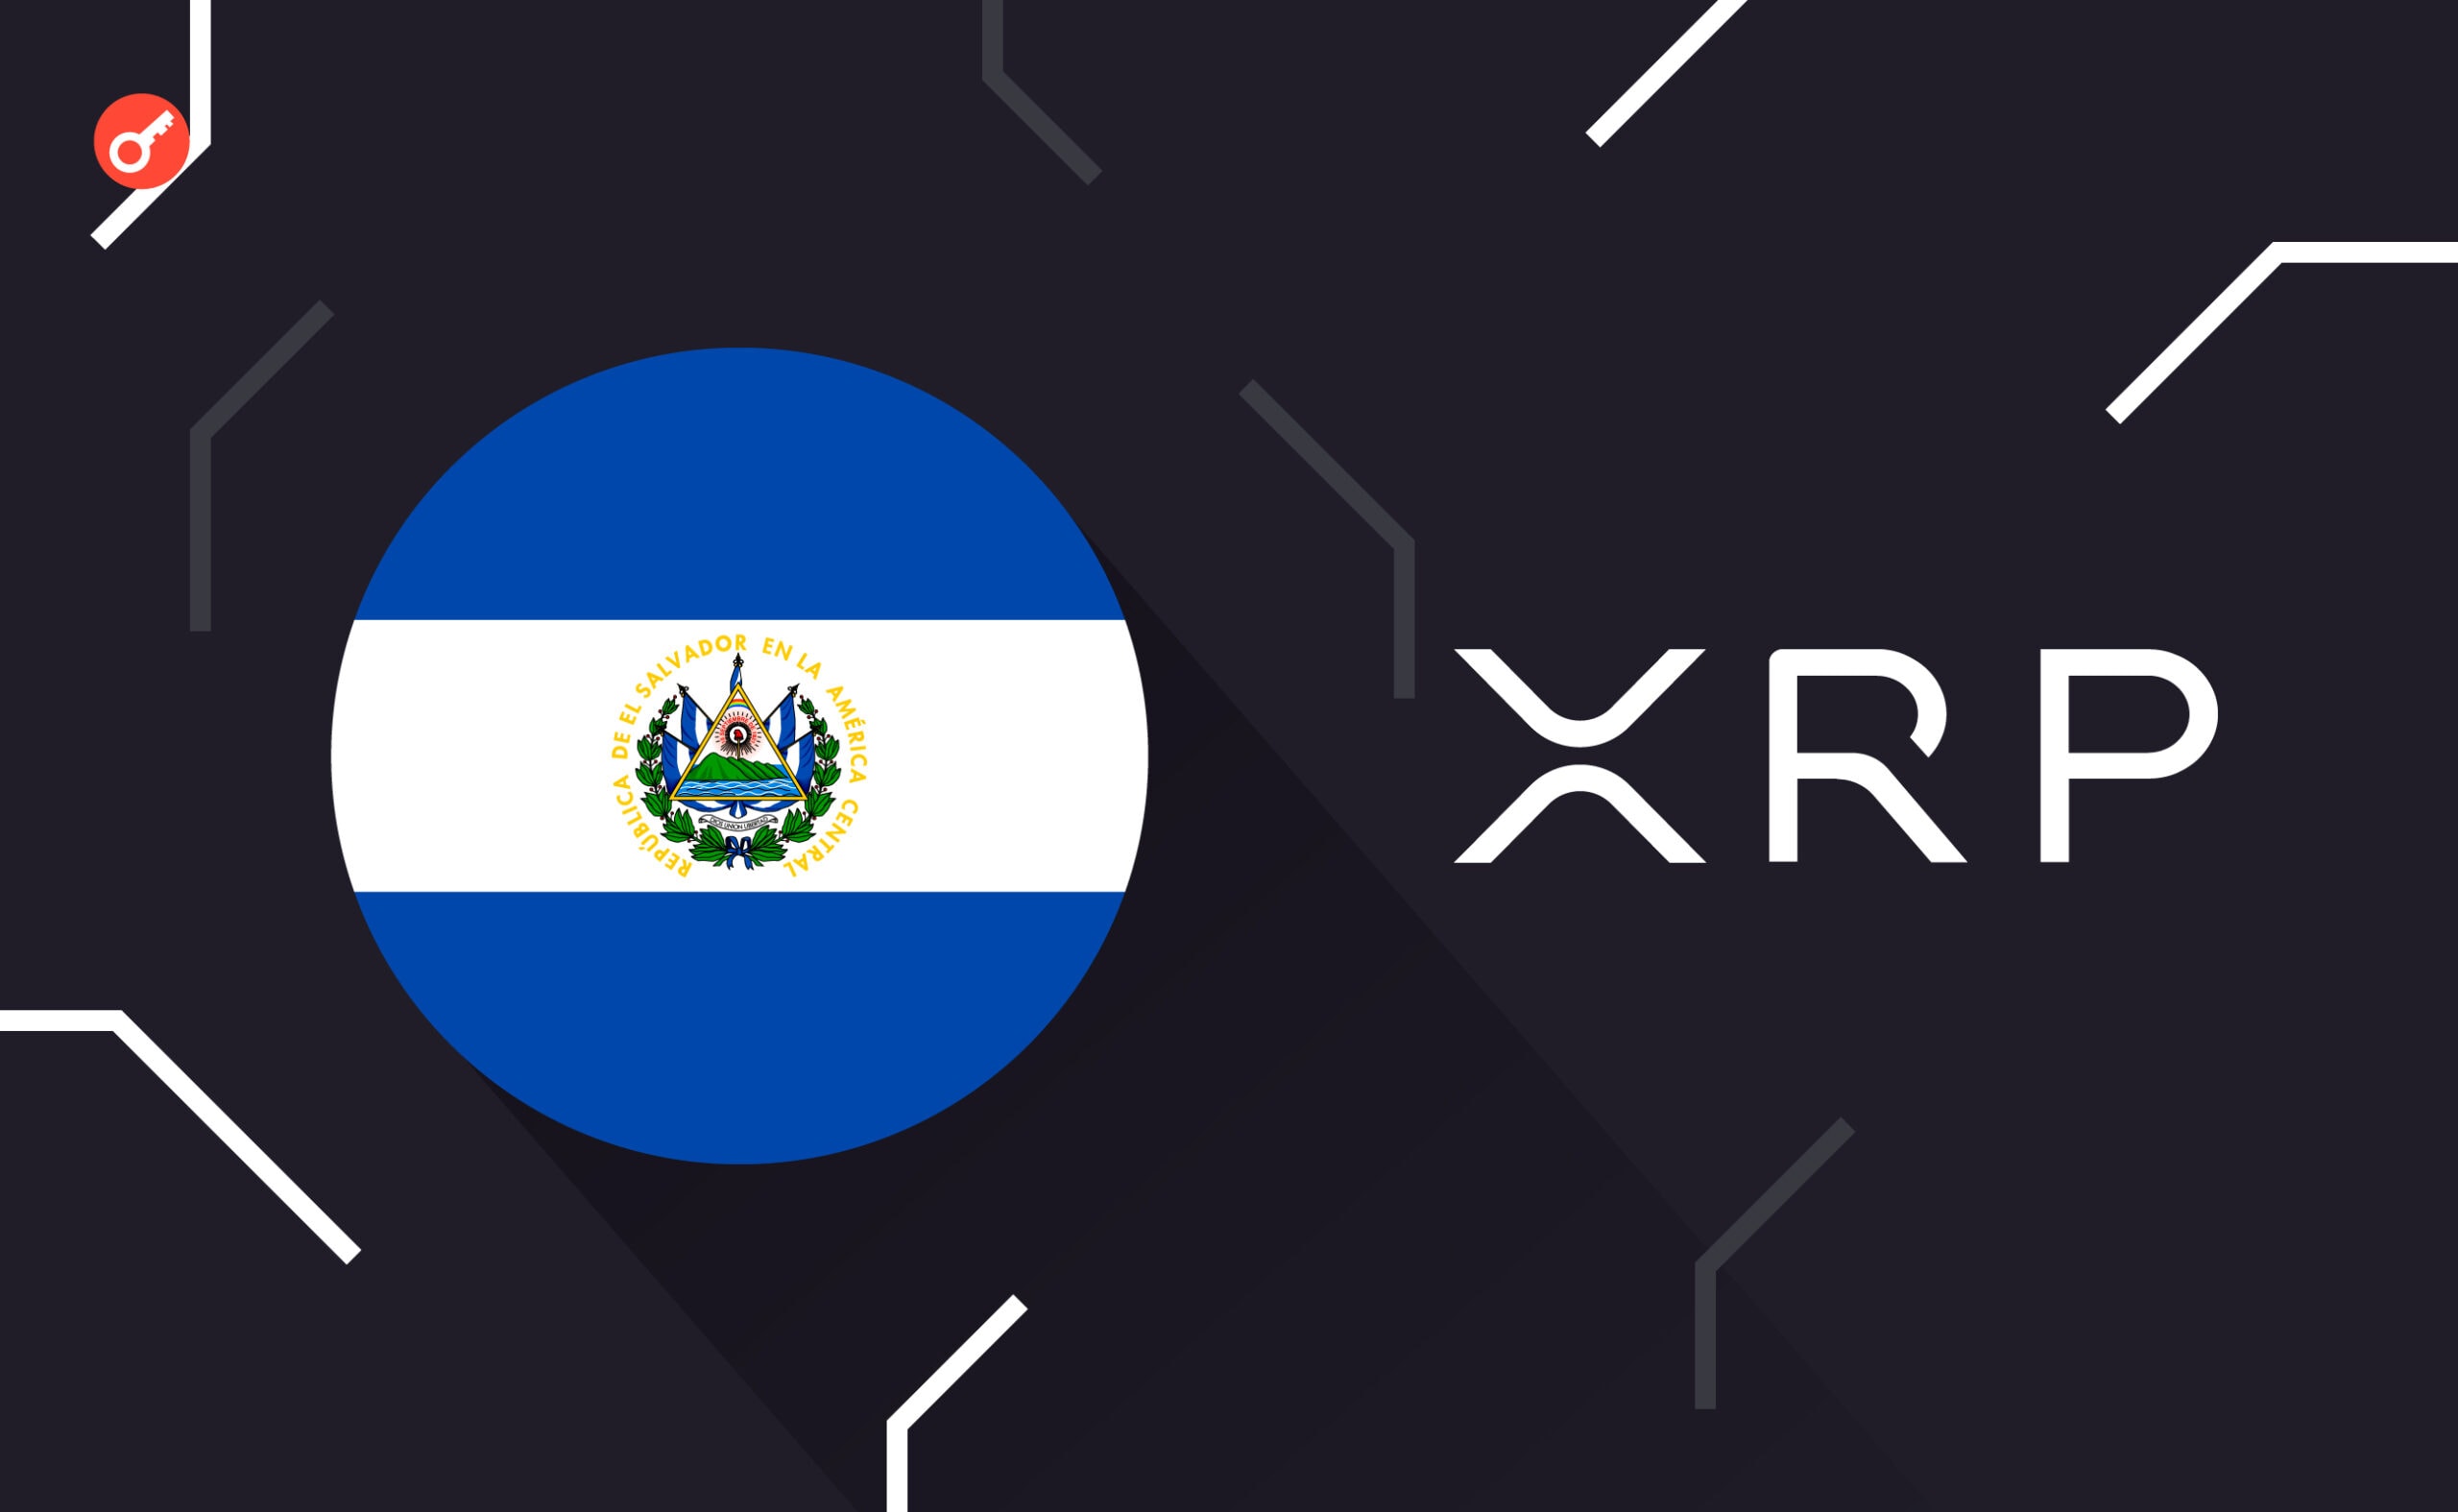 Колишній топменеджер Ripple радить Сальвадору перейти на XRP через високі комісії в мережі Bitcoin. Головний колаж новини.